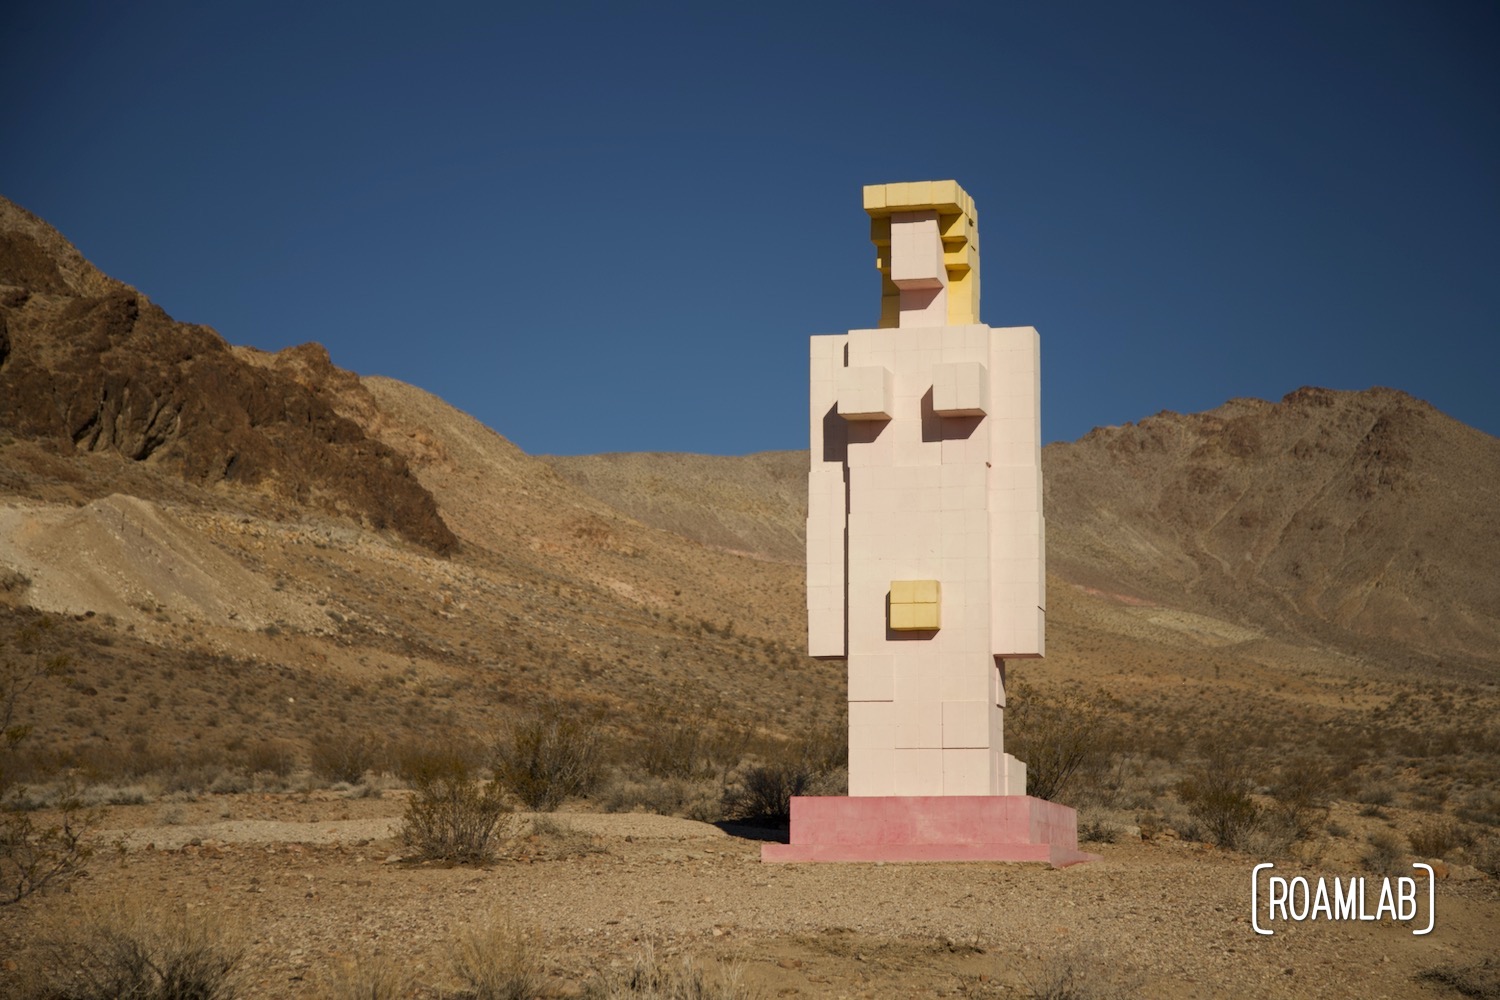 Pixilated sculpture of nude Venus kneeling in the desert.